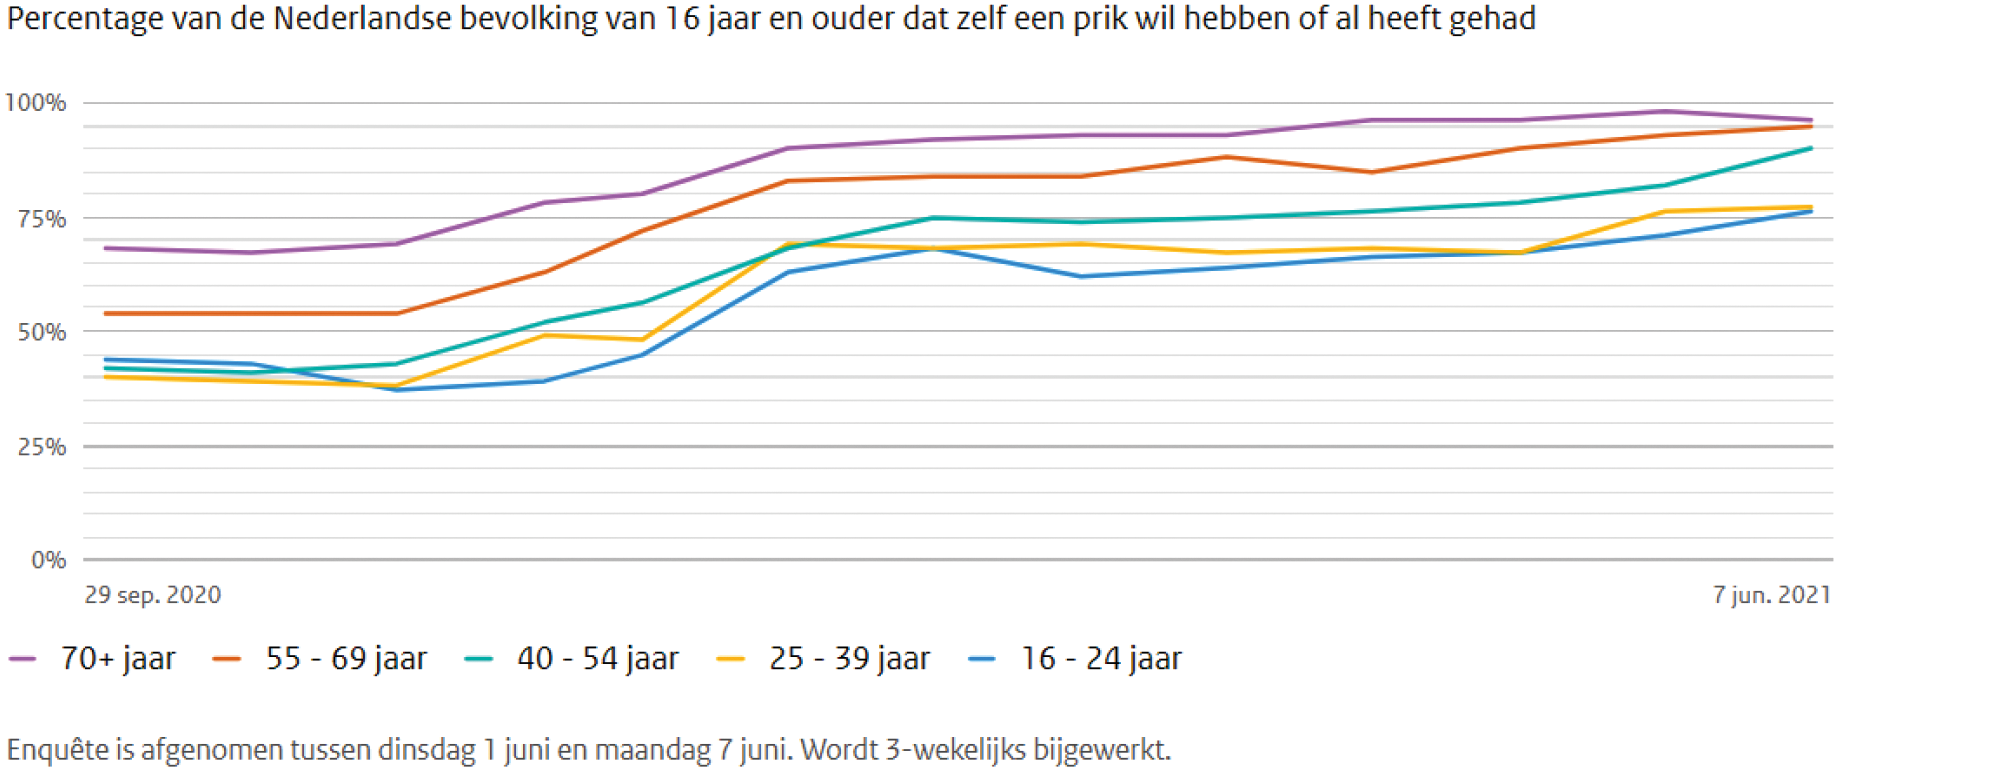 Figuur 4. Percentage van de Nederlandse bevolking van 16 jaar en ouder dat zelf een prik tegen het coronavirus wil hebben of al heeft gehad. Zie: https://coronadashboard.rijksoverheid.nl/landelijk/vaccinaties